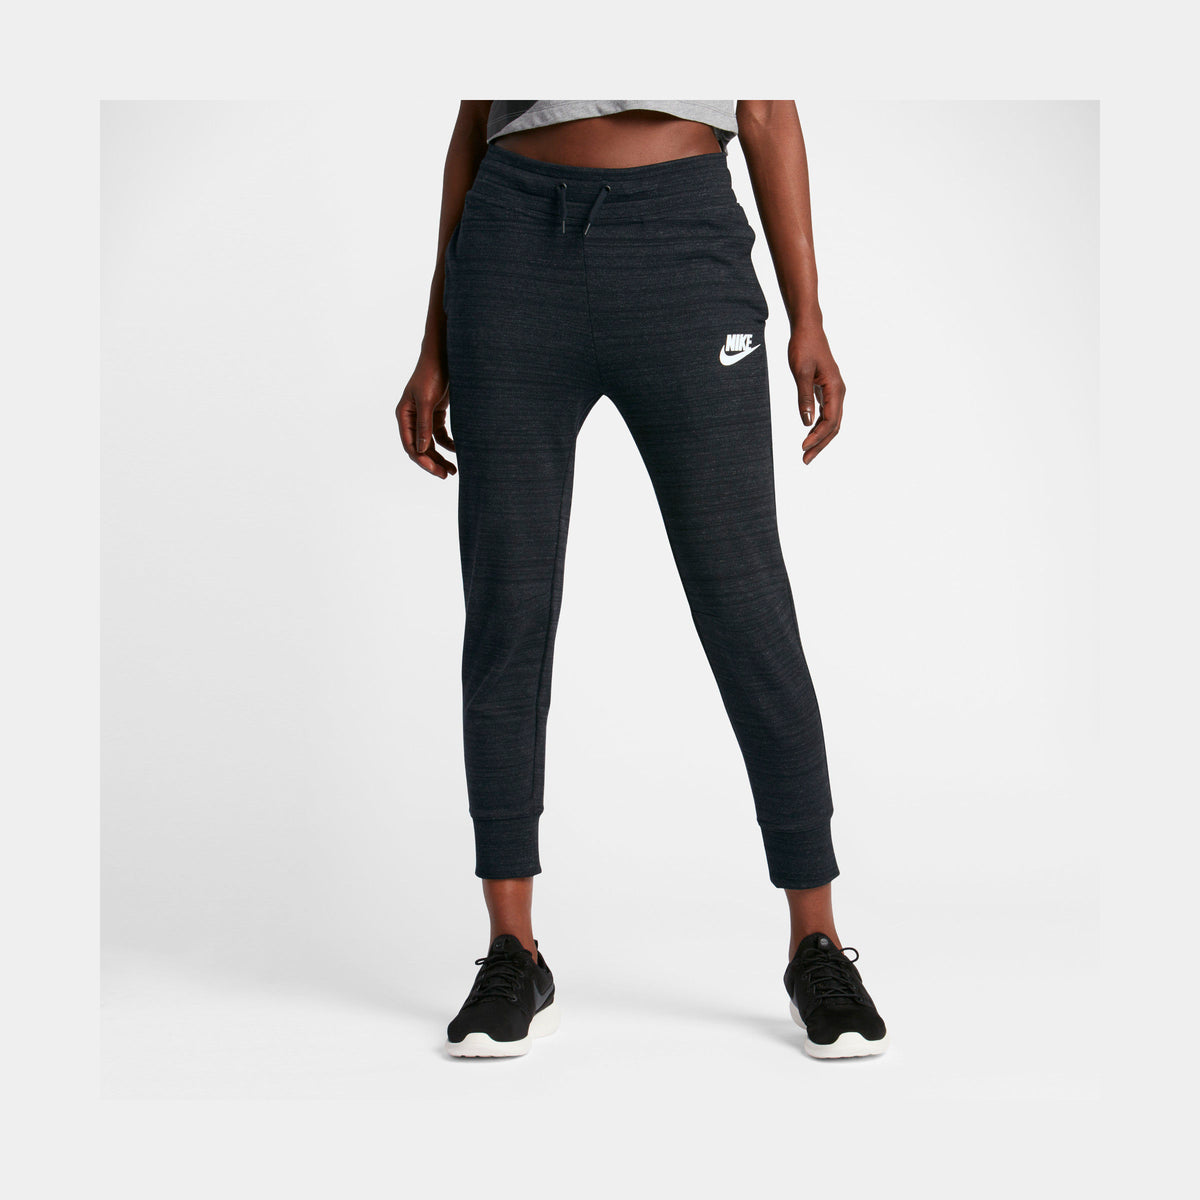 Reis Voorrecht Mus Nike Sportswear Advance Womens Pants Black 837462-010 – Shoe Palace